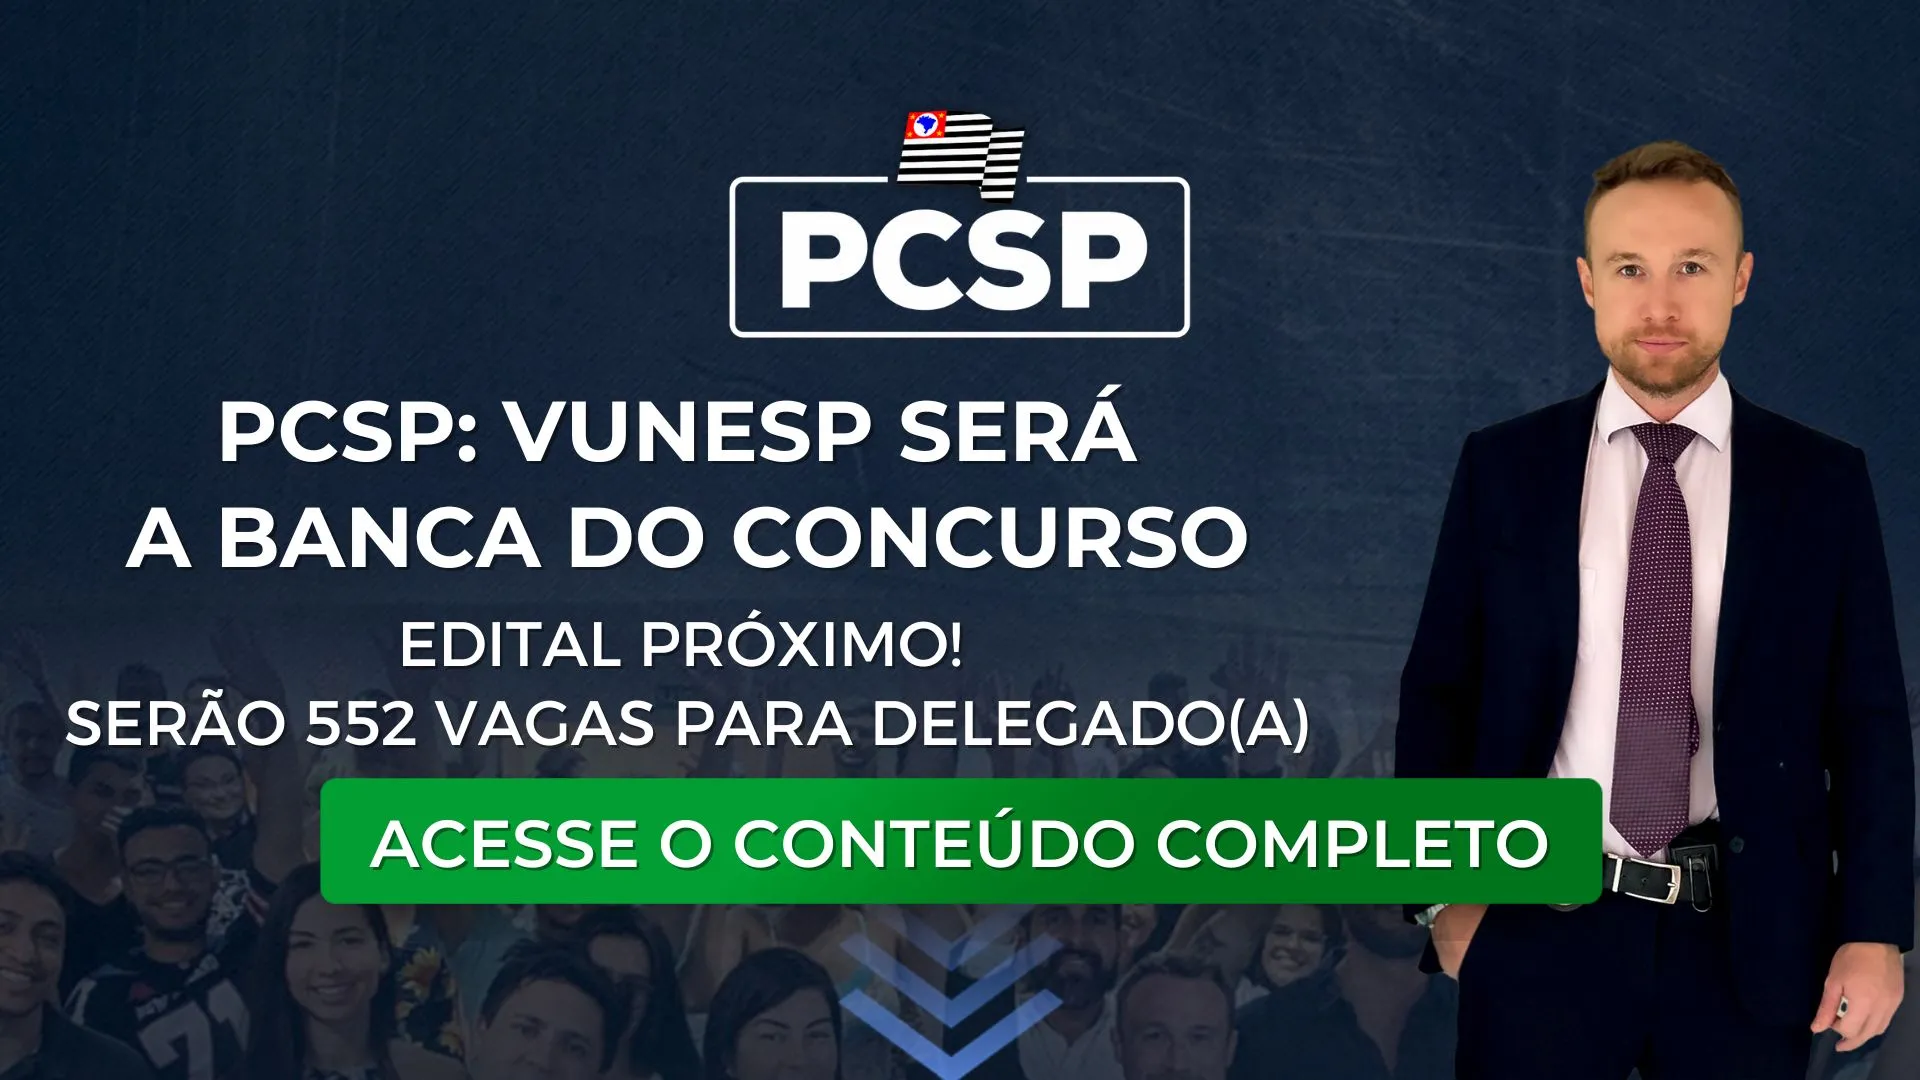 PCSP: VUNESP será a banca do concurso. Edital próximo e com 552 vagas